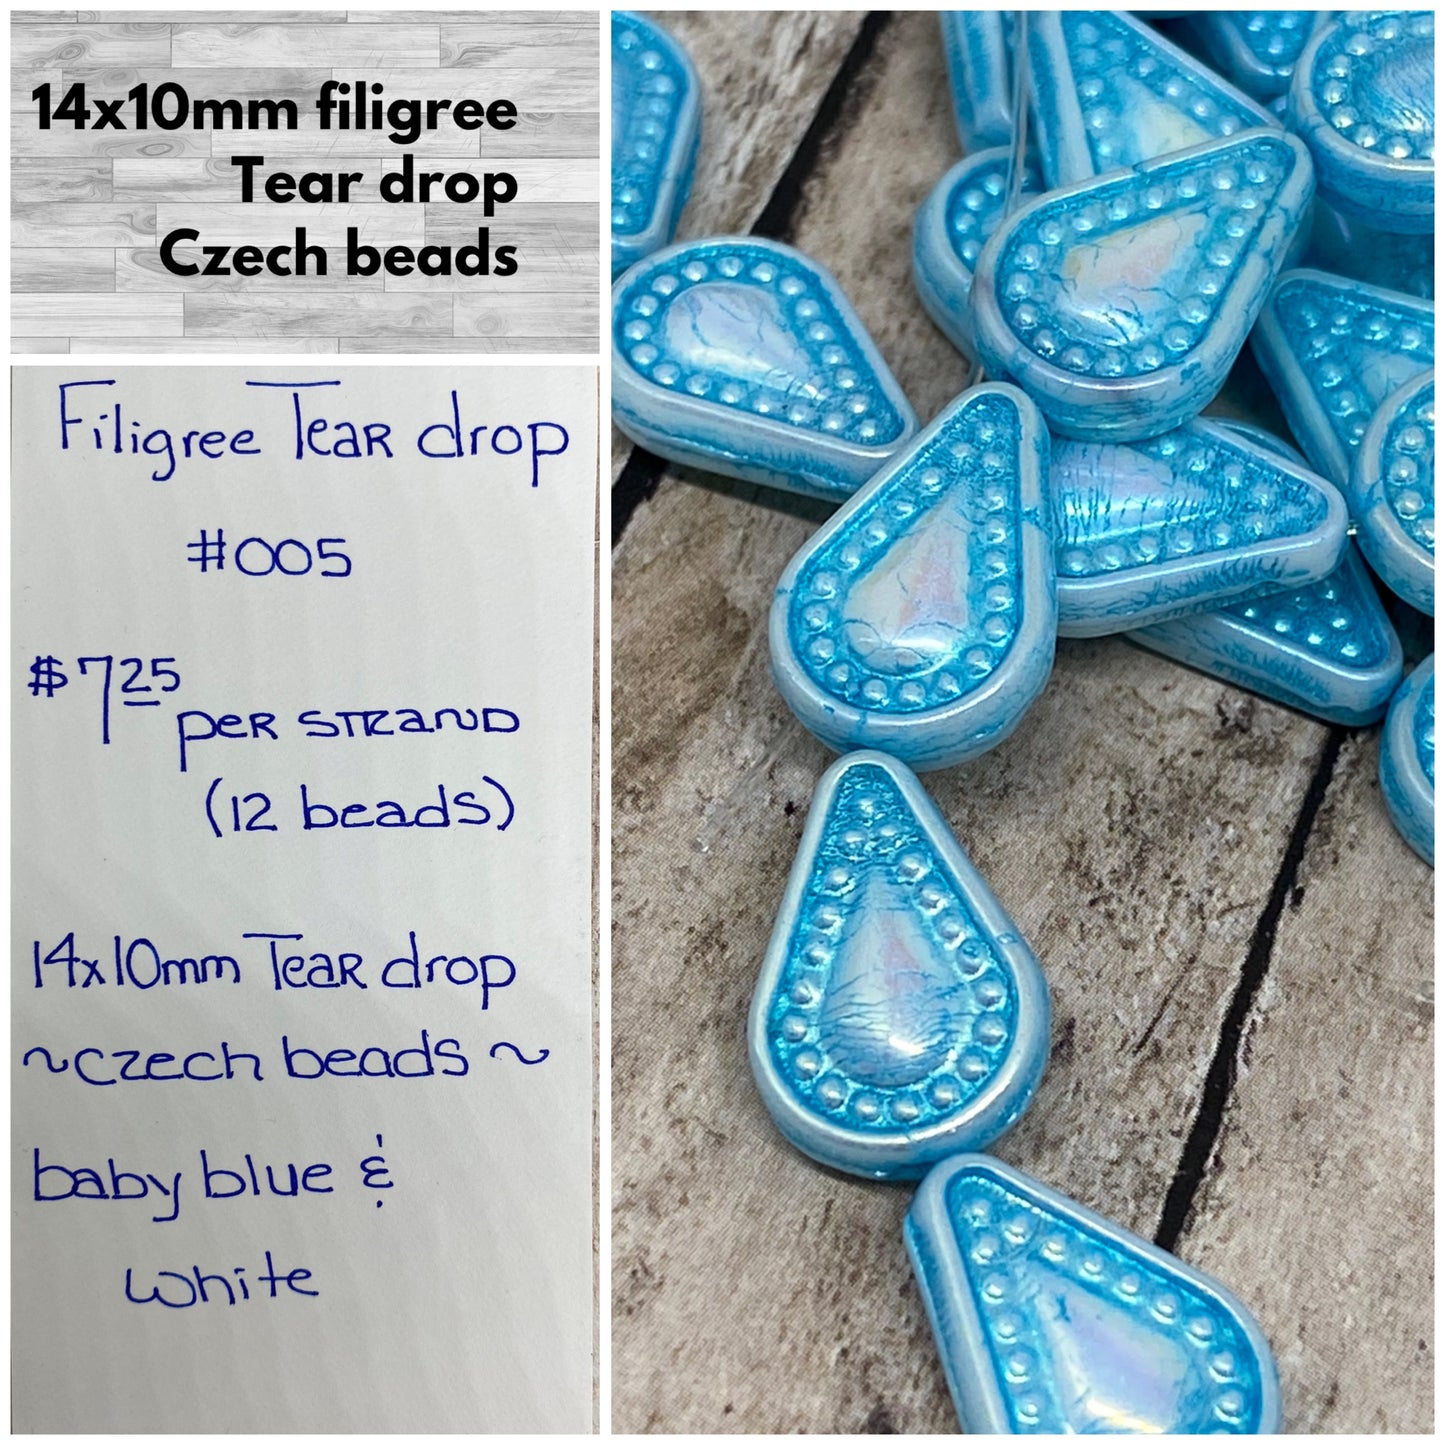 Filigree tear drop #005